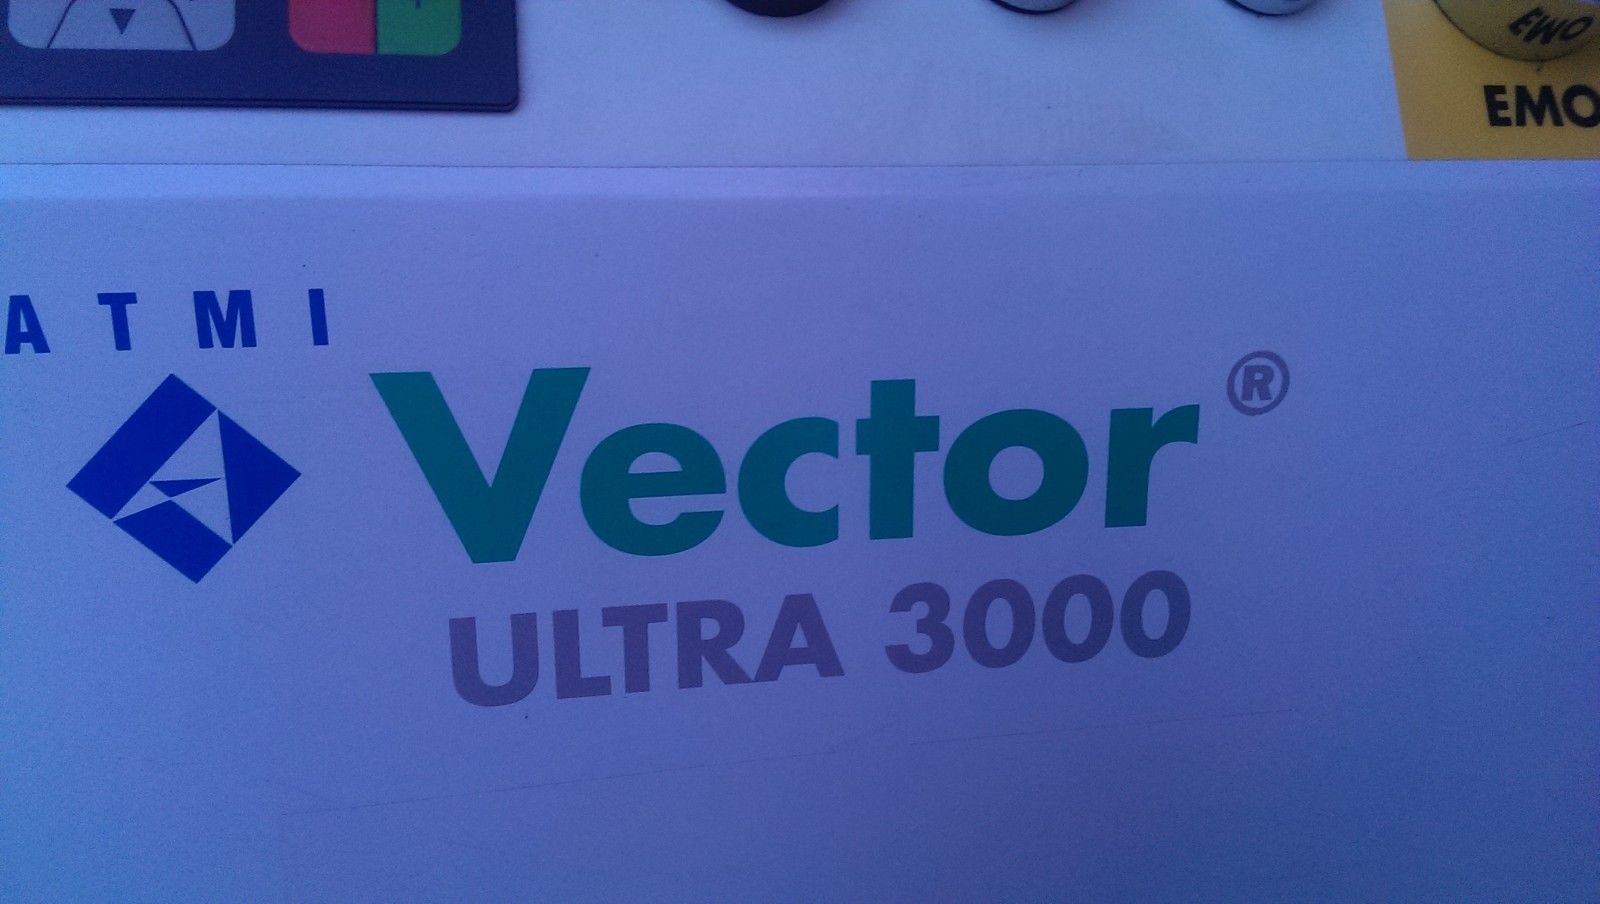 Foto Verwendet ATMI / ECOSYS Vector Ultra 3000 Zum Verkauf